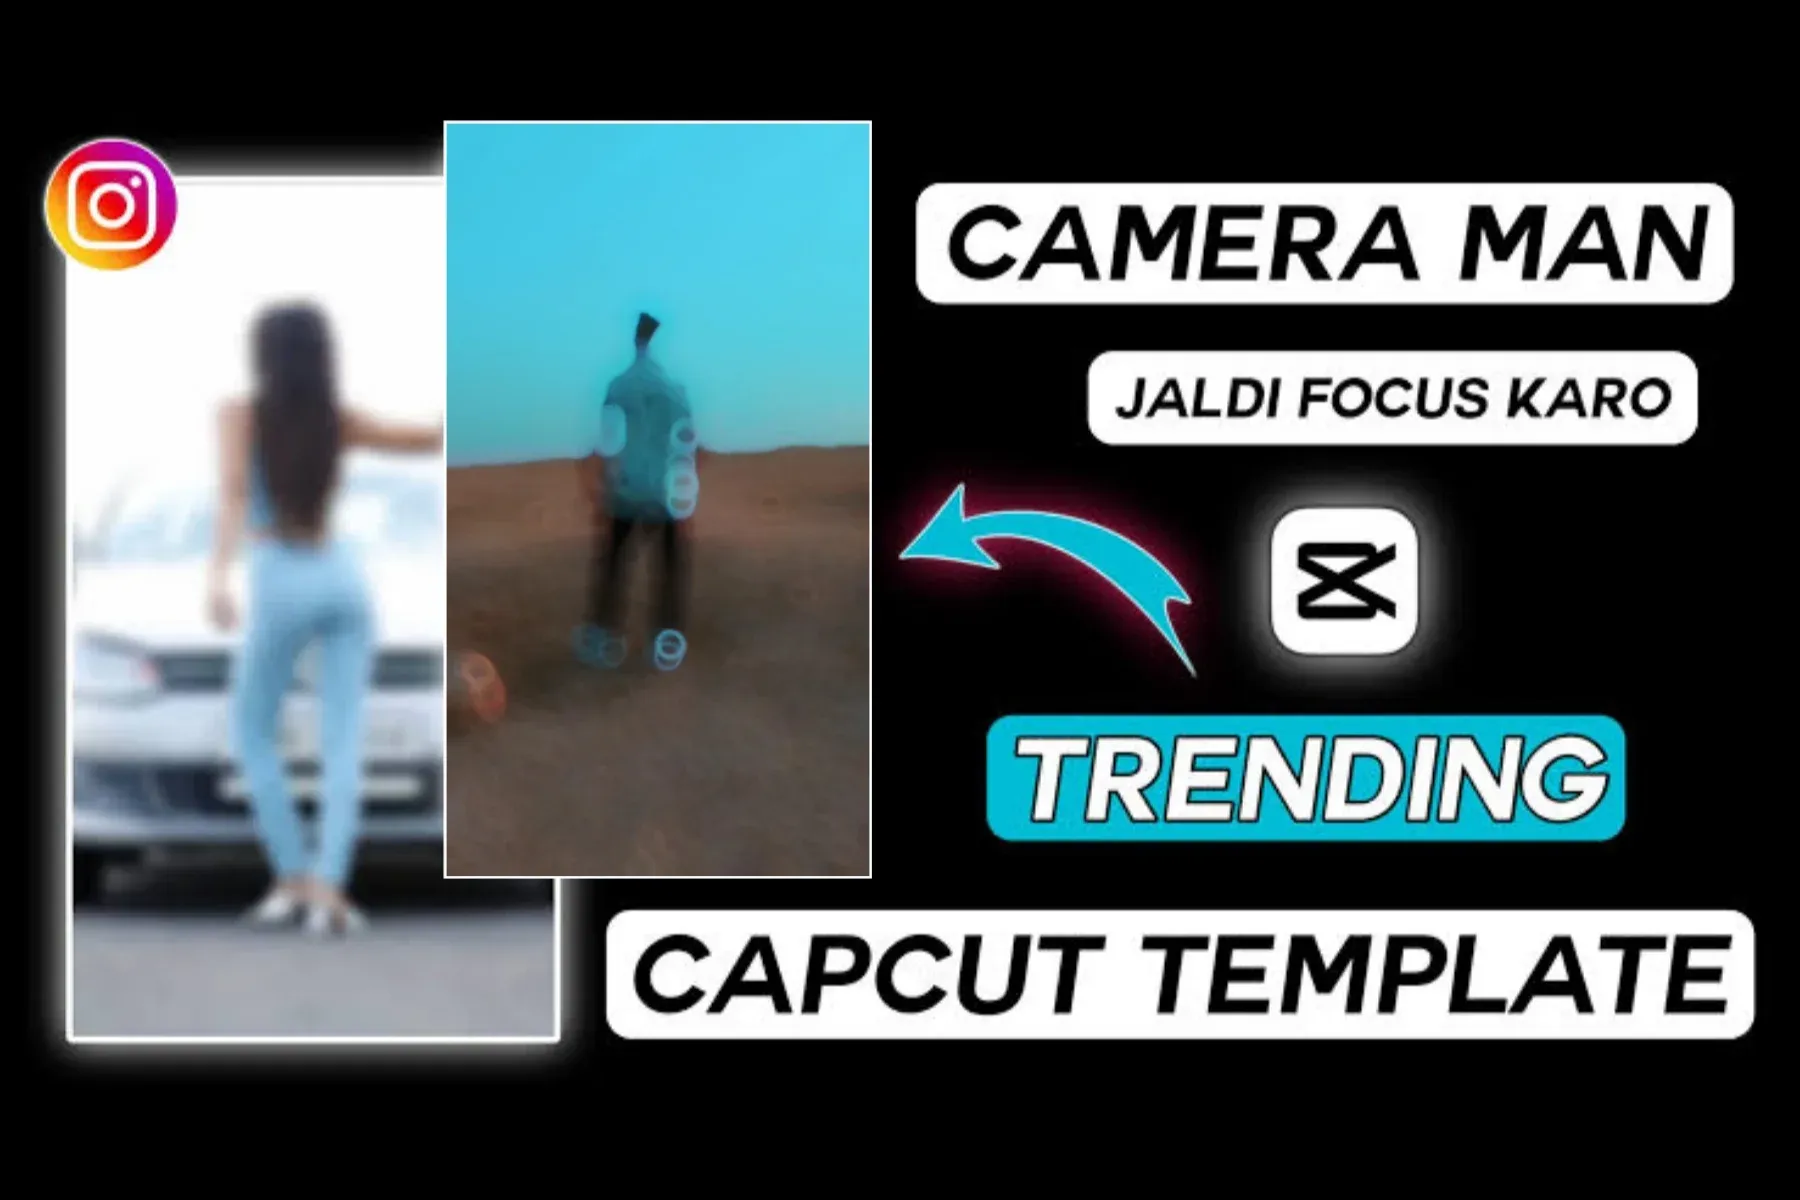 Cameraman Jaldi Focus Karo CapCut Templates